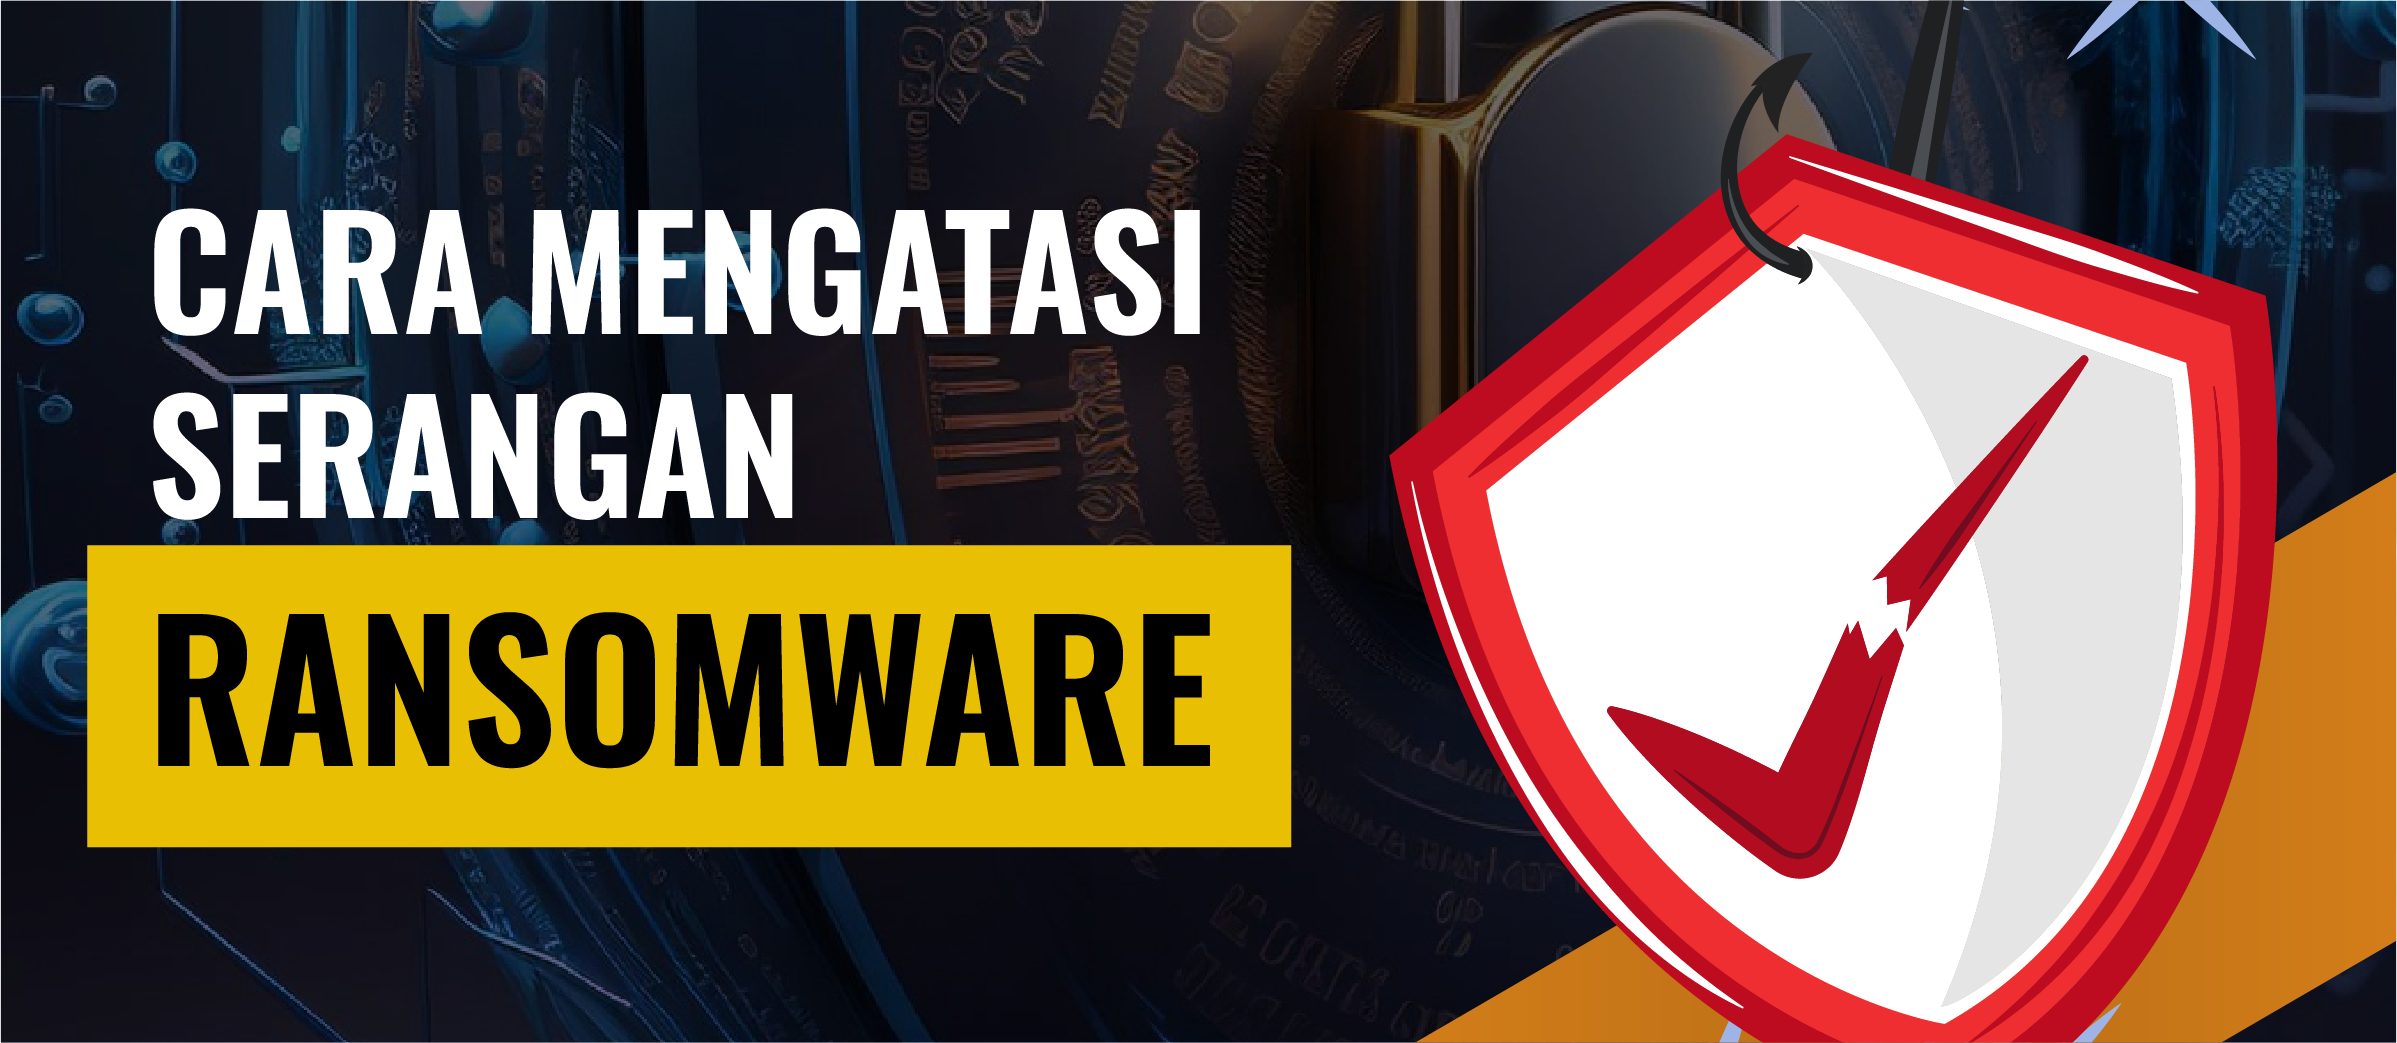 Cara Mengatasi Serangan Ransomware